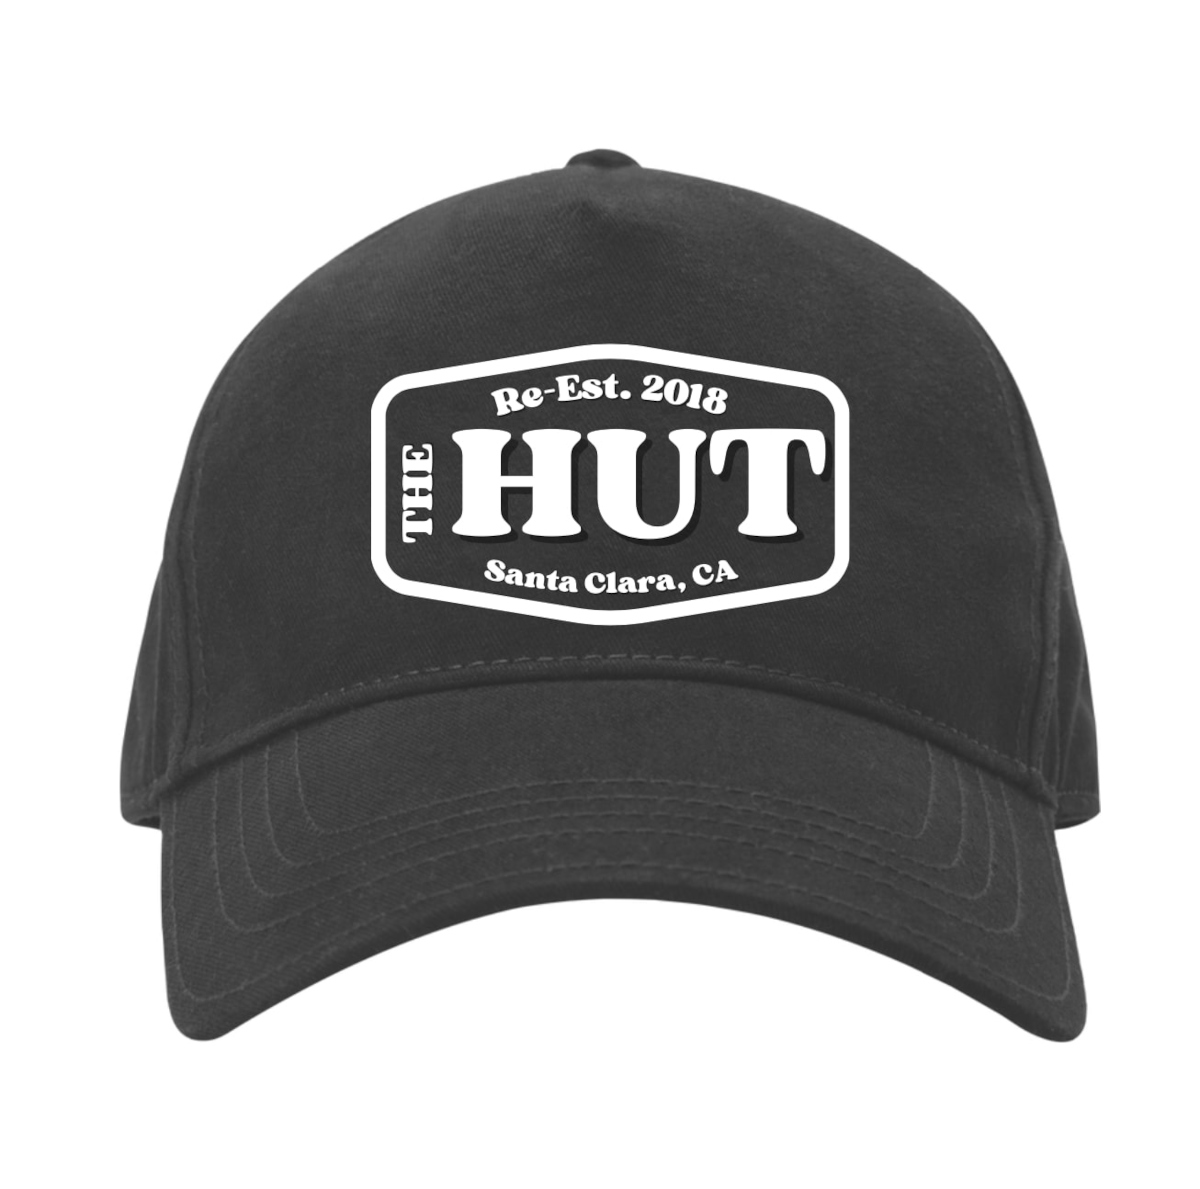 The Hut Baseball Cap